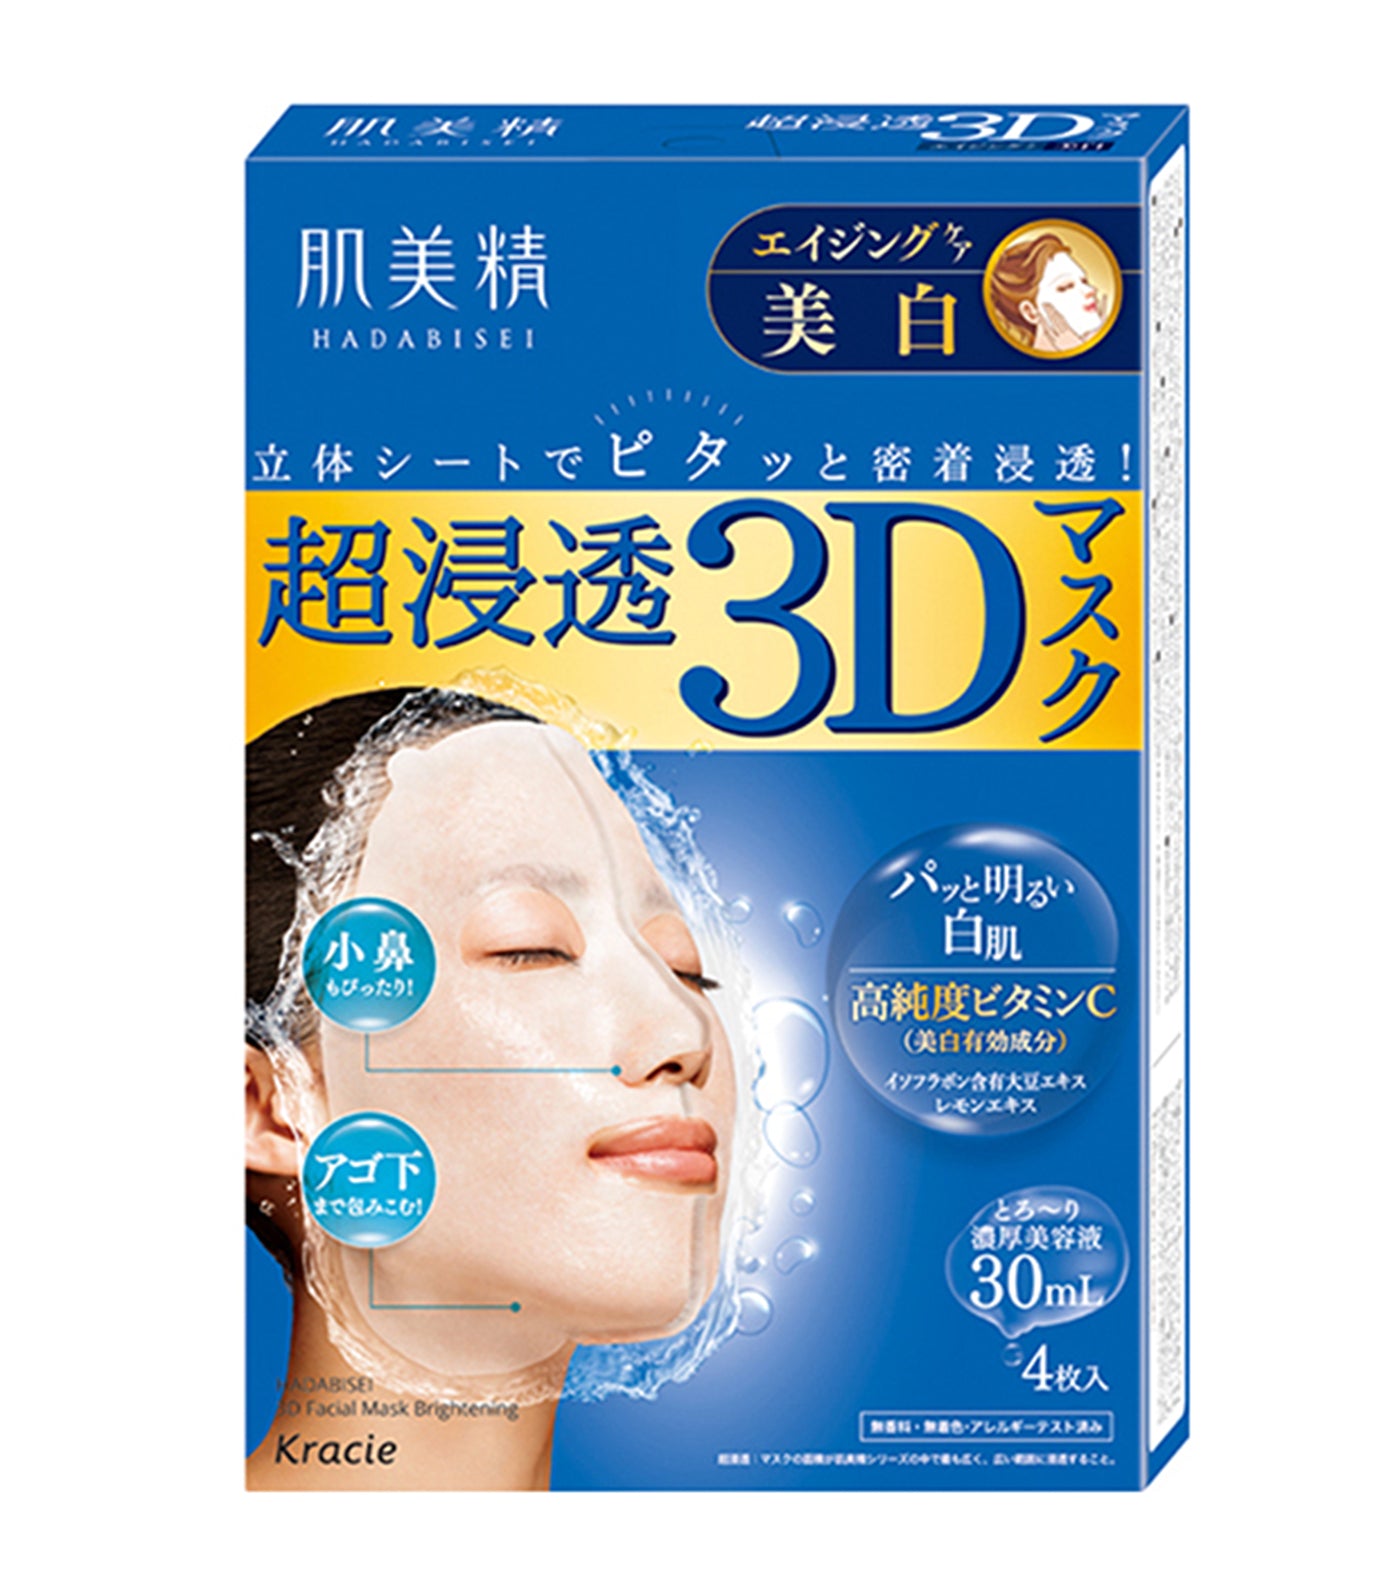 Hadabisei 3D Brightening Face Mask